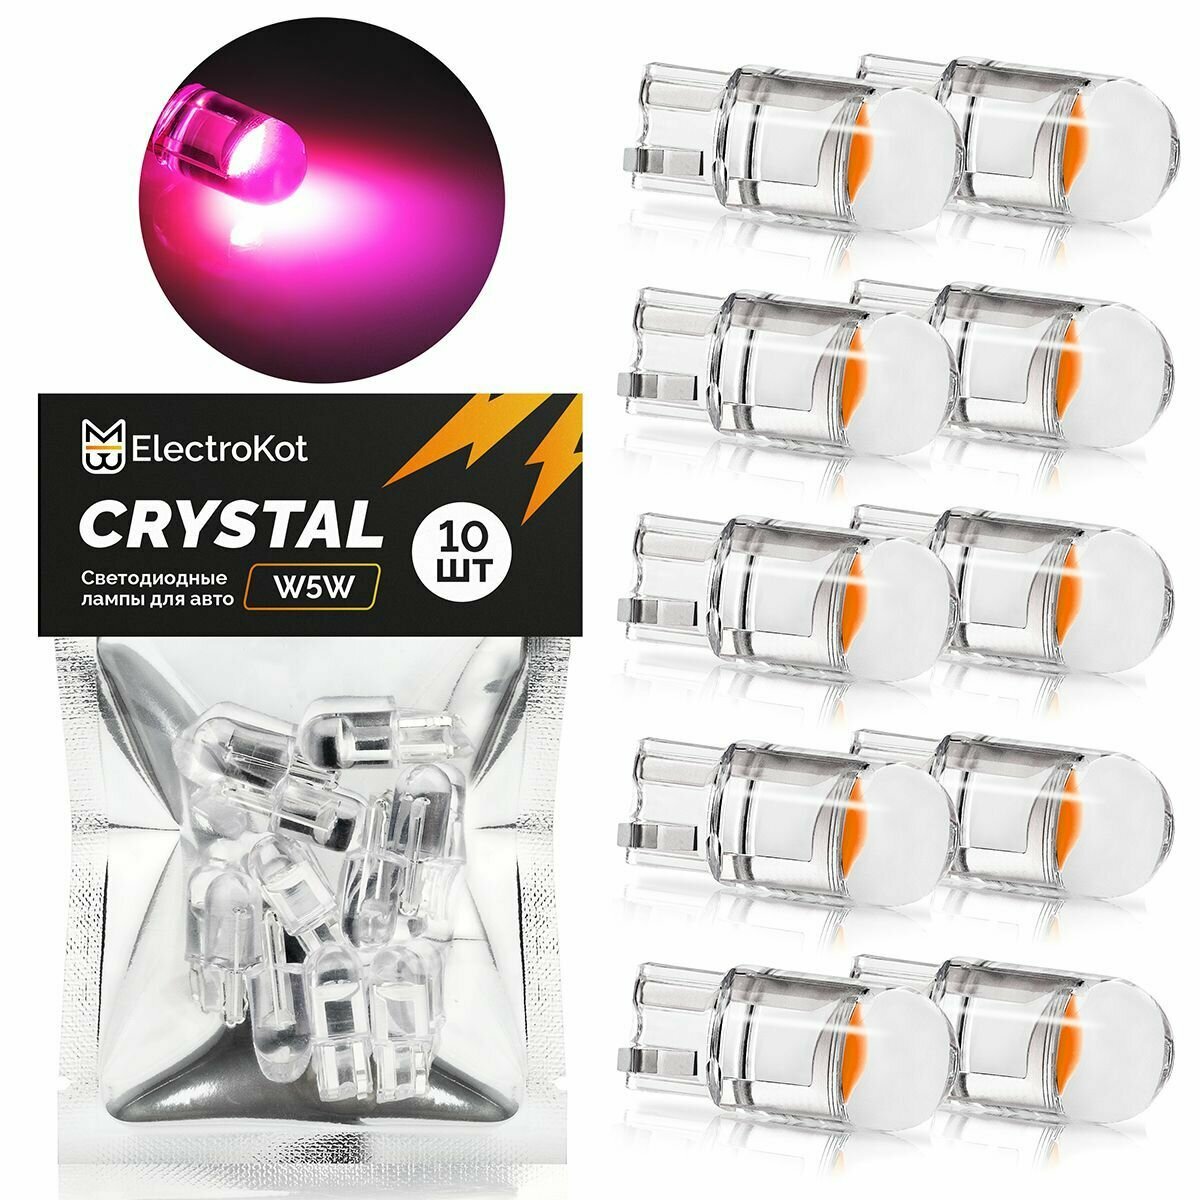 Светодиодная лампа для авто ElectroKot Crystal T10 W5W розовый свет 10 шт, в подсветку салона/багажника/номерного знака, Т10